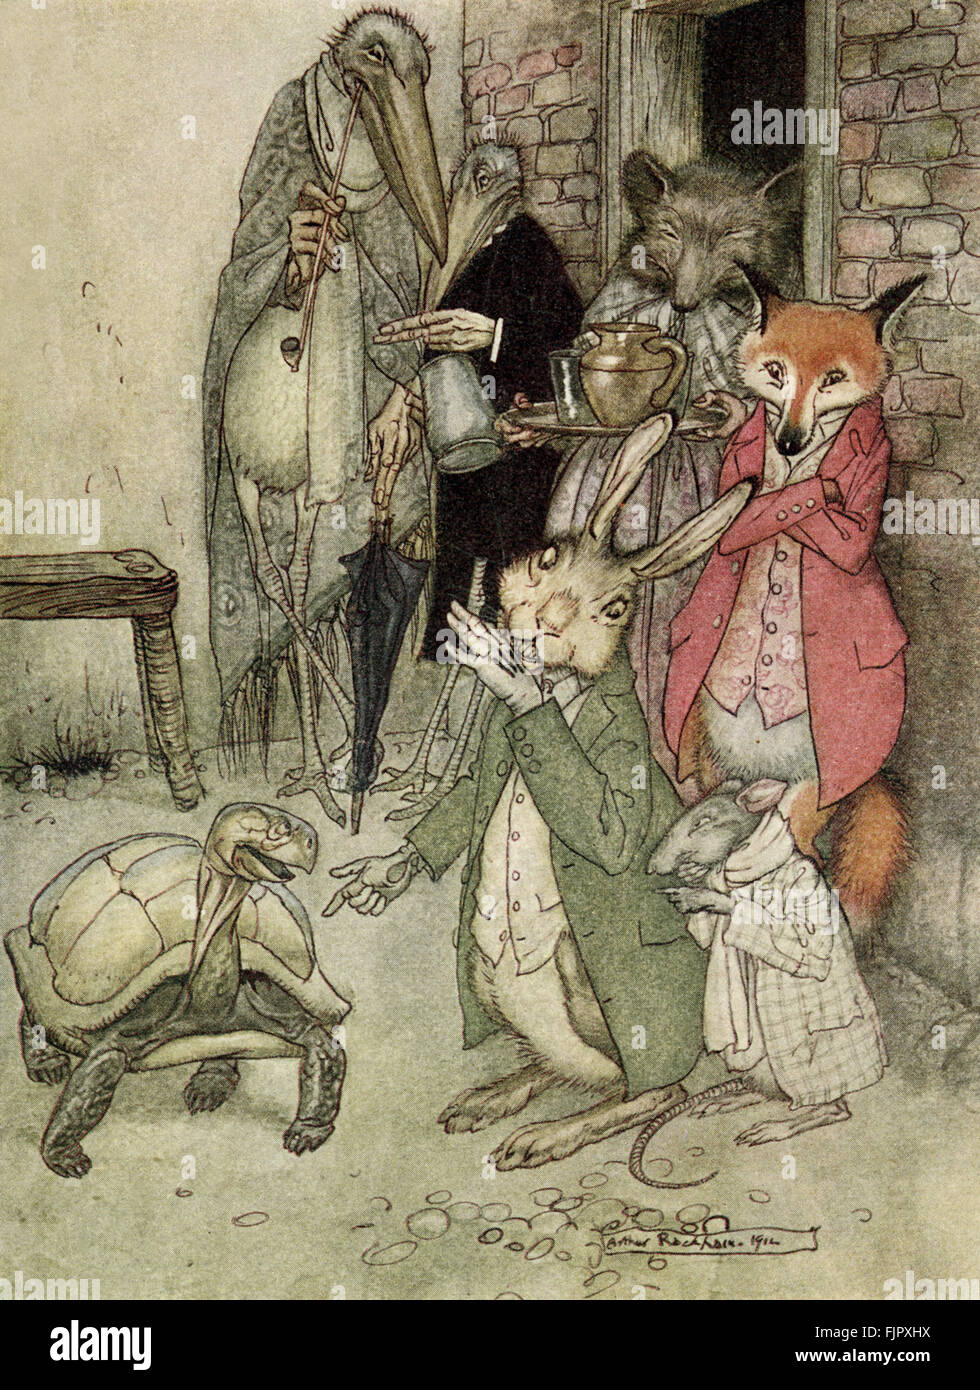 Le Lièvre et la tortue - Aesop's Fables, 1933 edition illustrée par Arthur Rackham (1867-1939) Banque D'Images